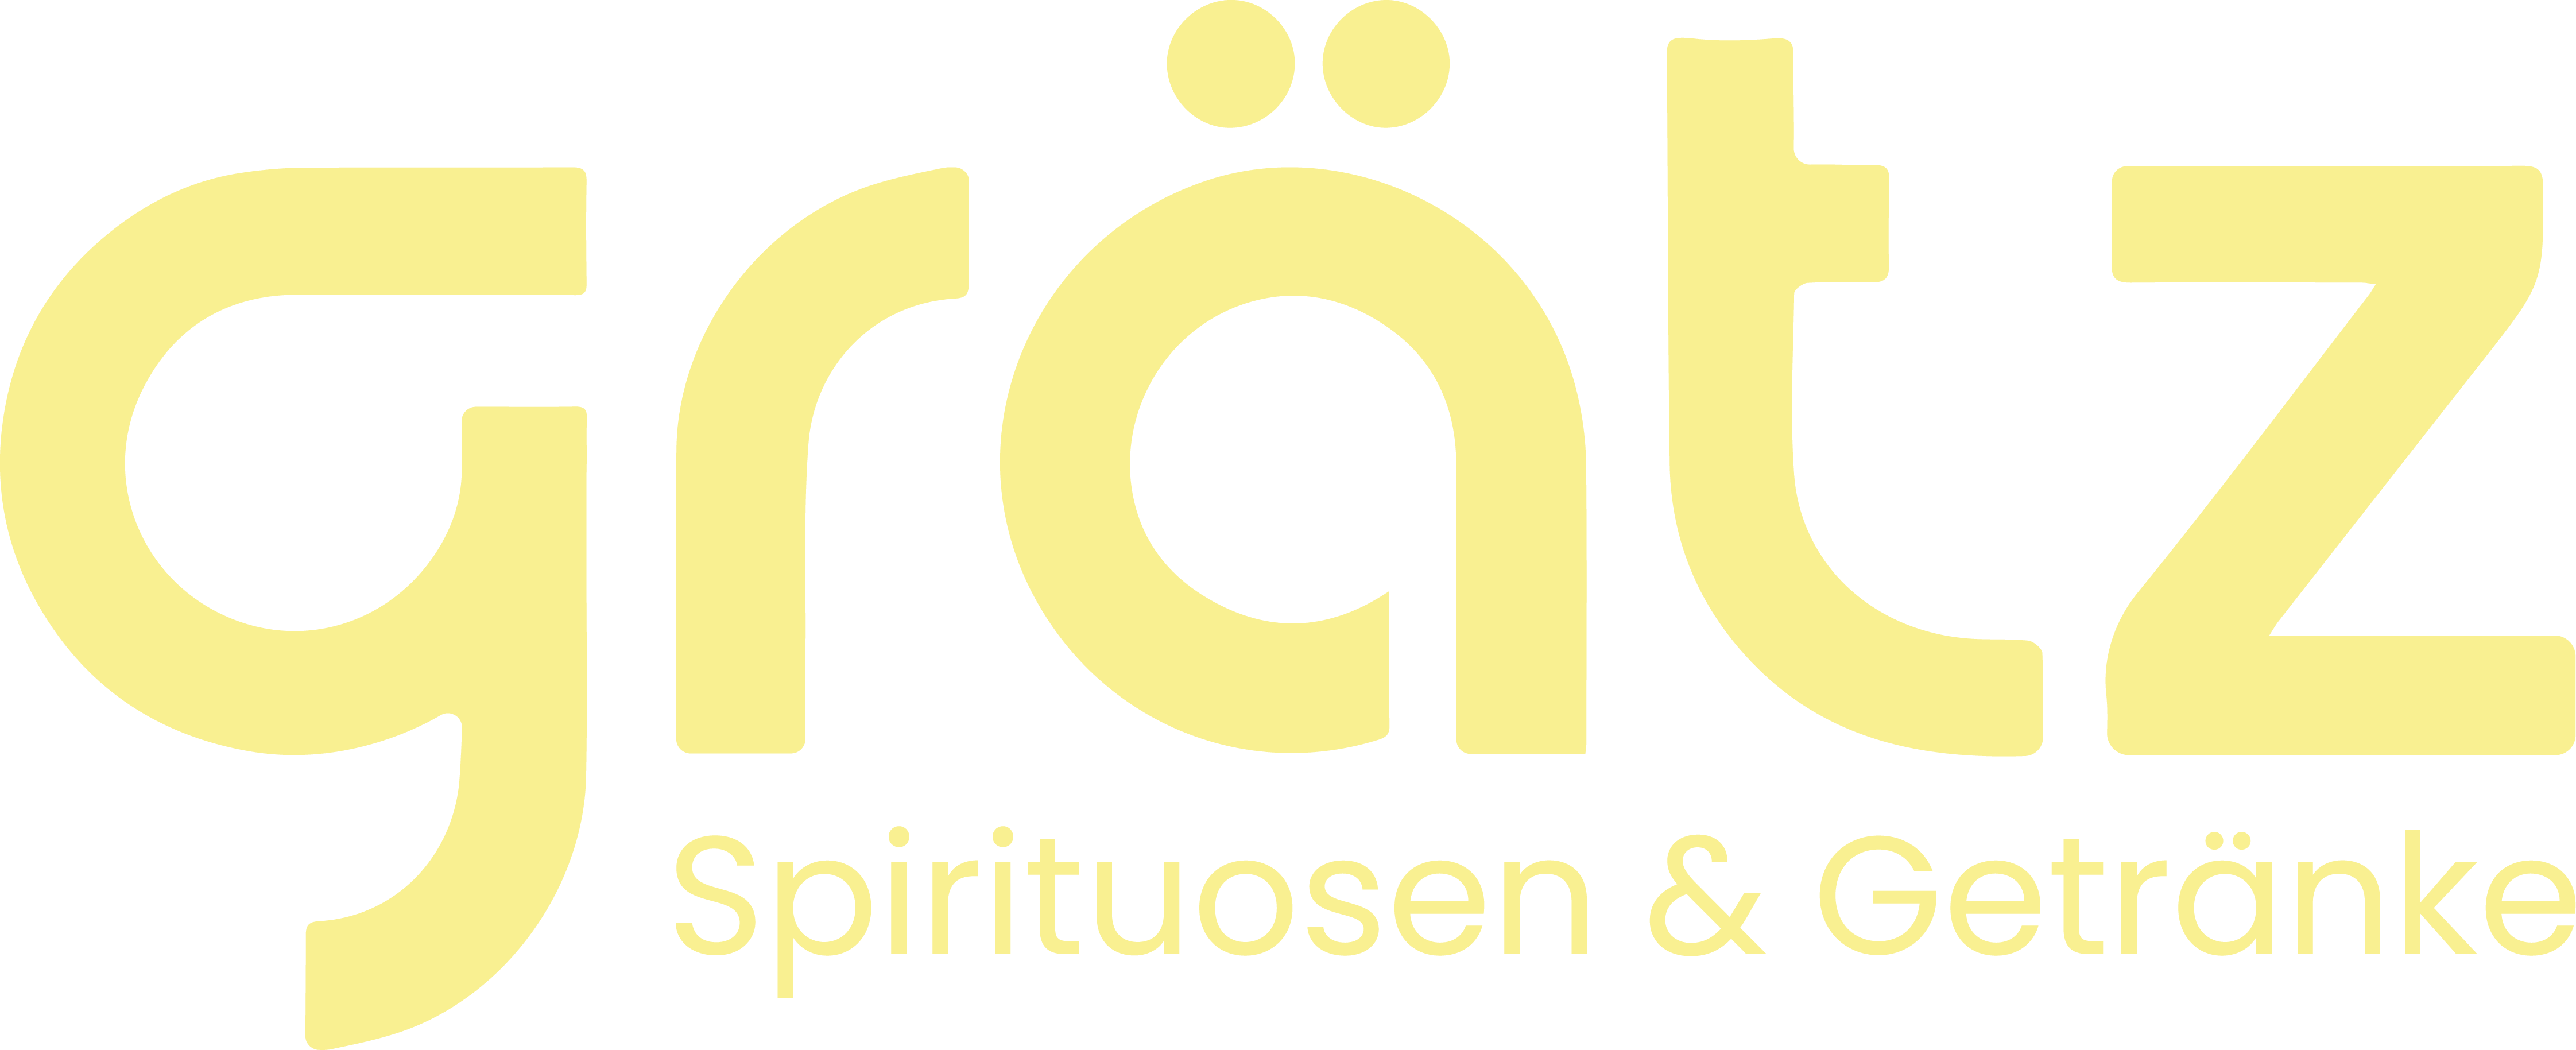 Grätz Spirituosen & Getränke - Logo gelb